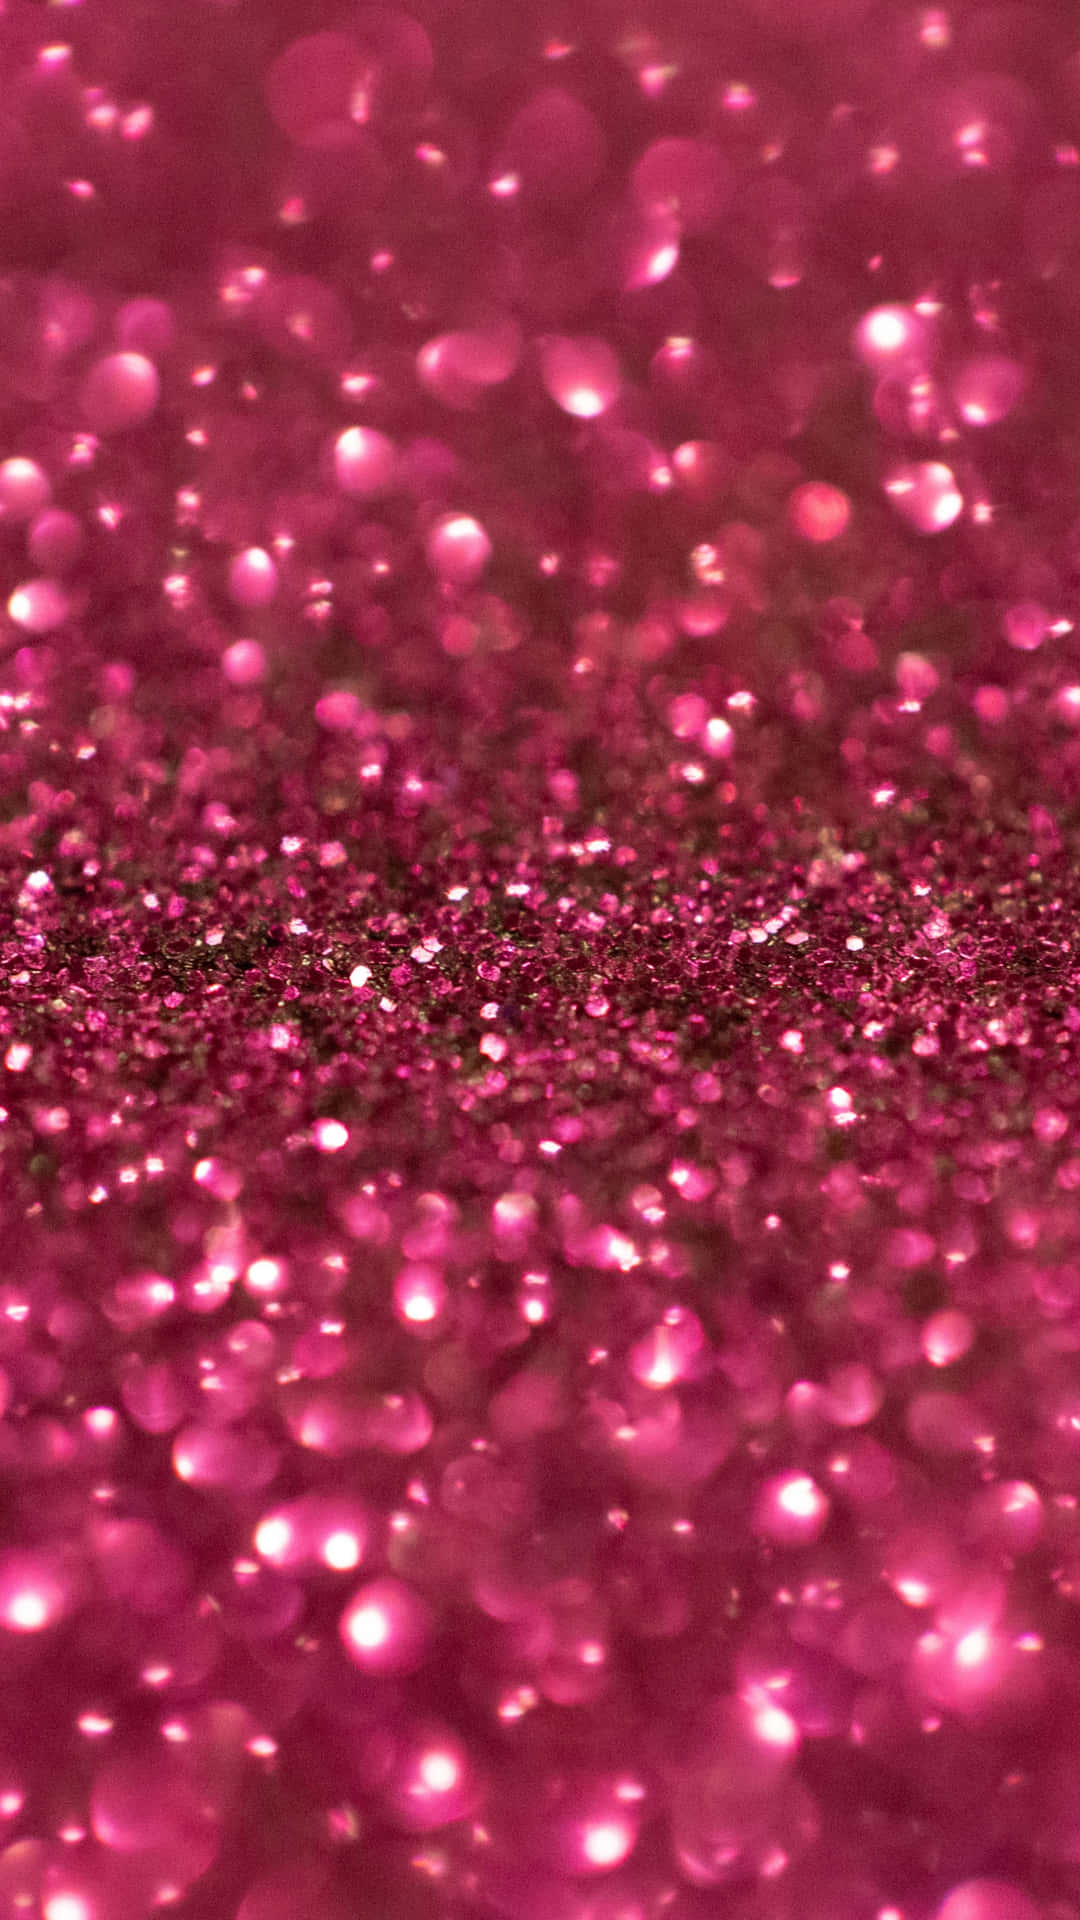 Pink Og Sort Glitter 1440 X 2560 Wallpaper